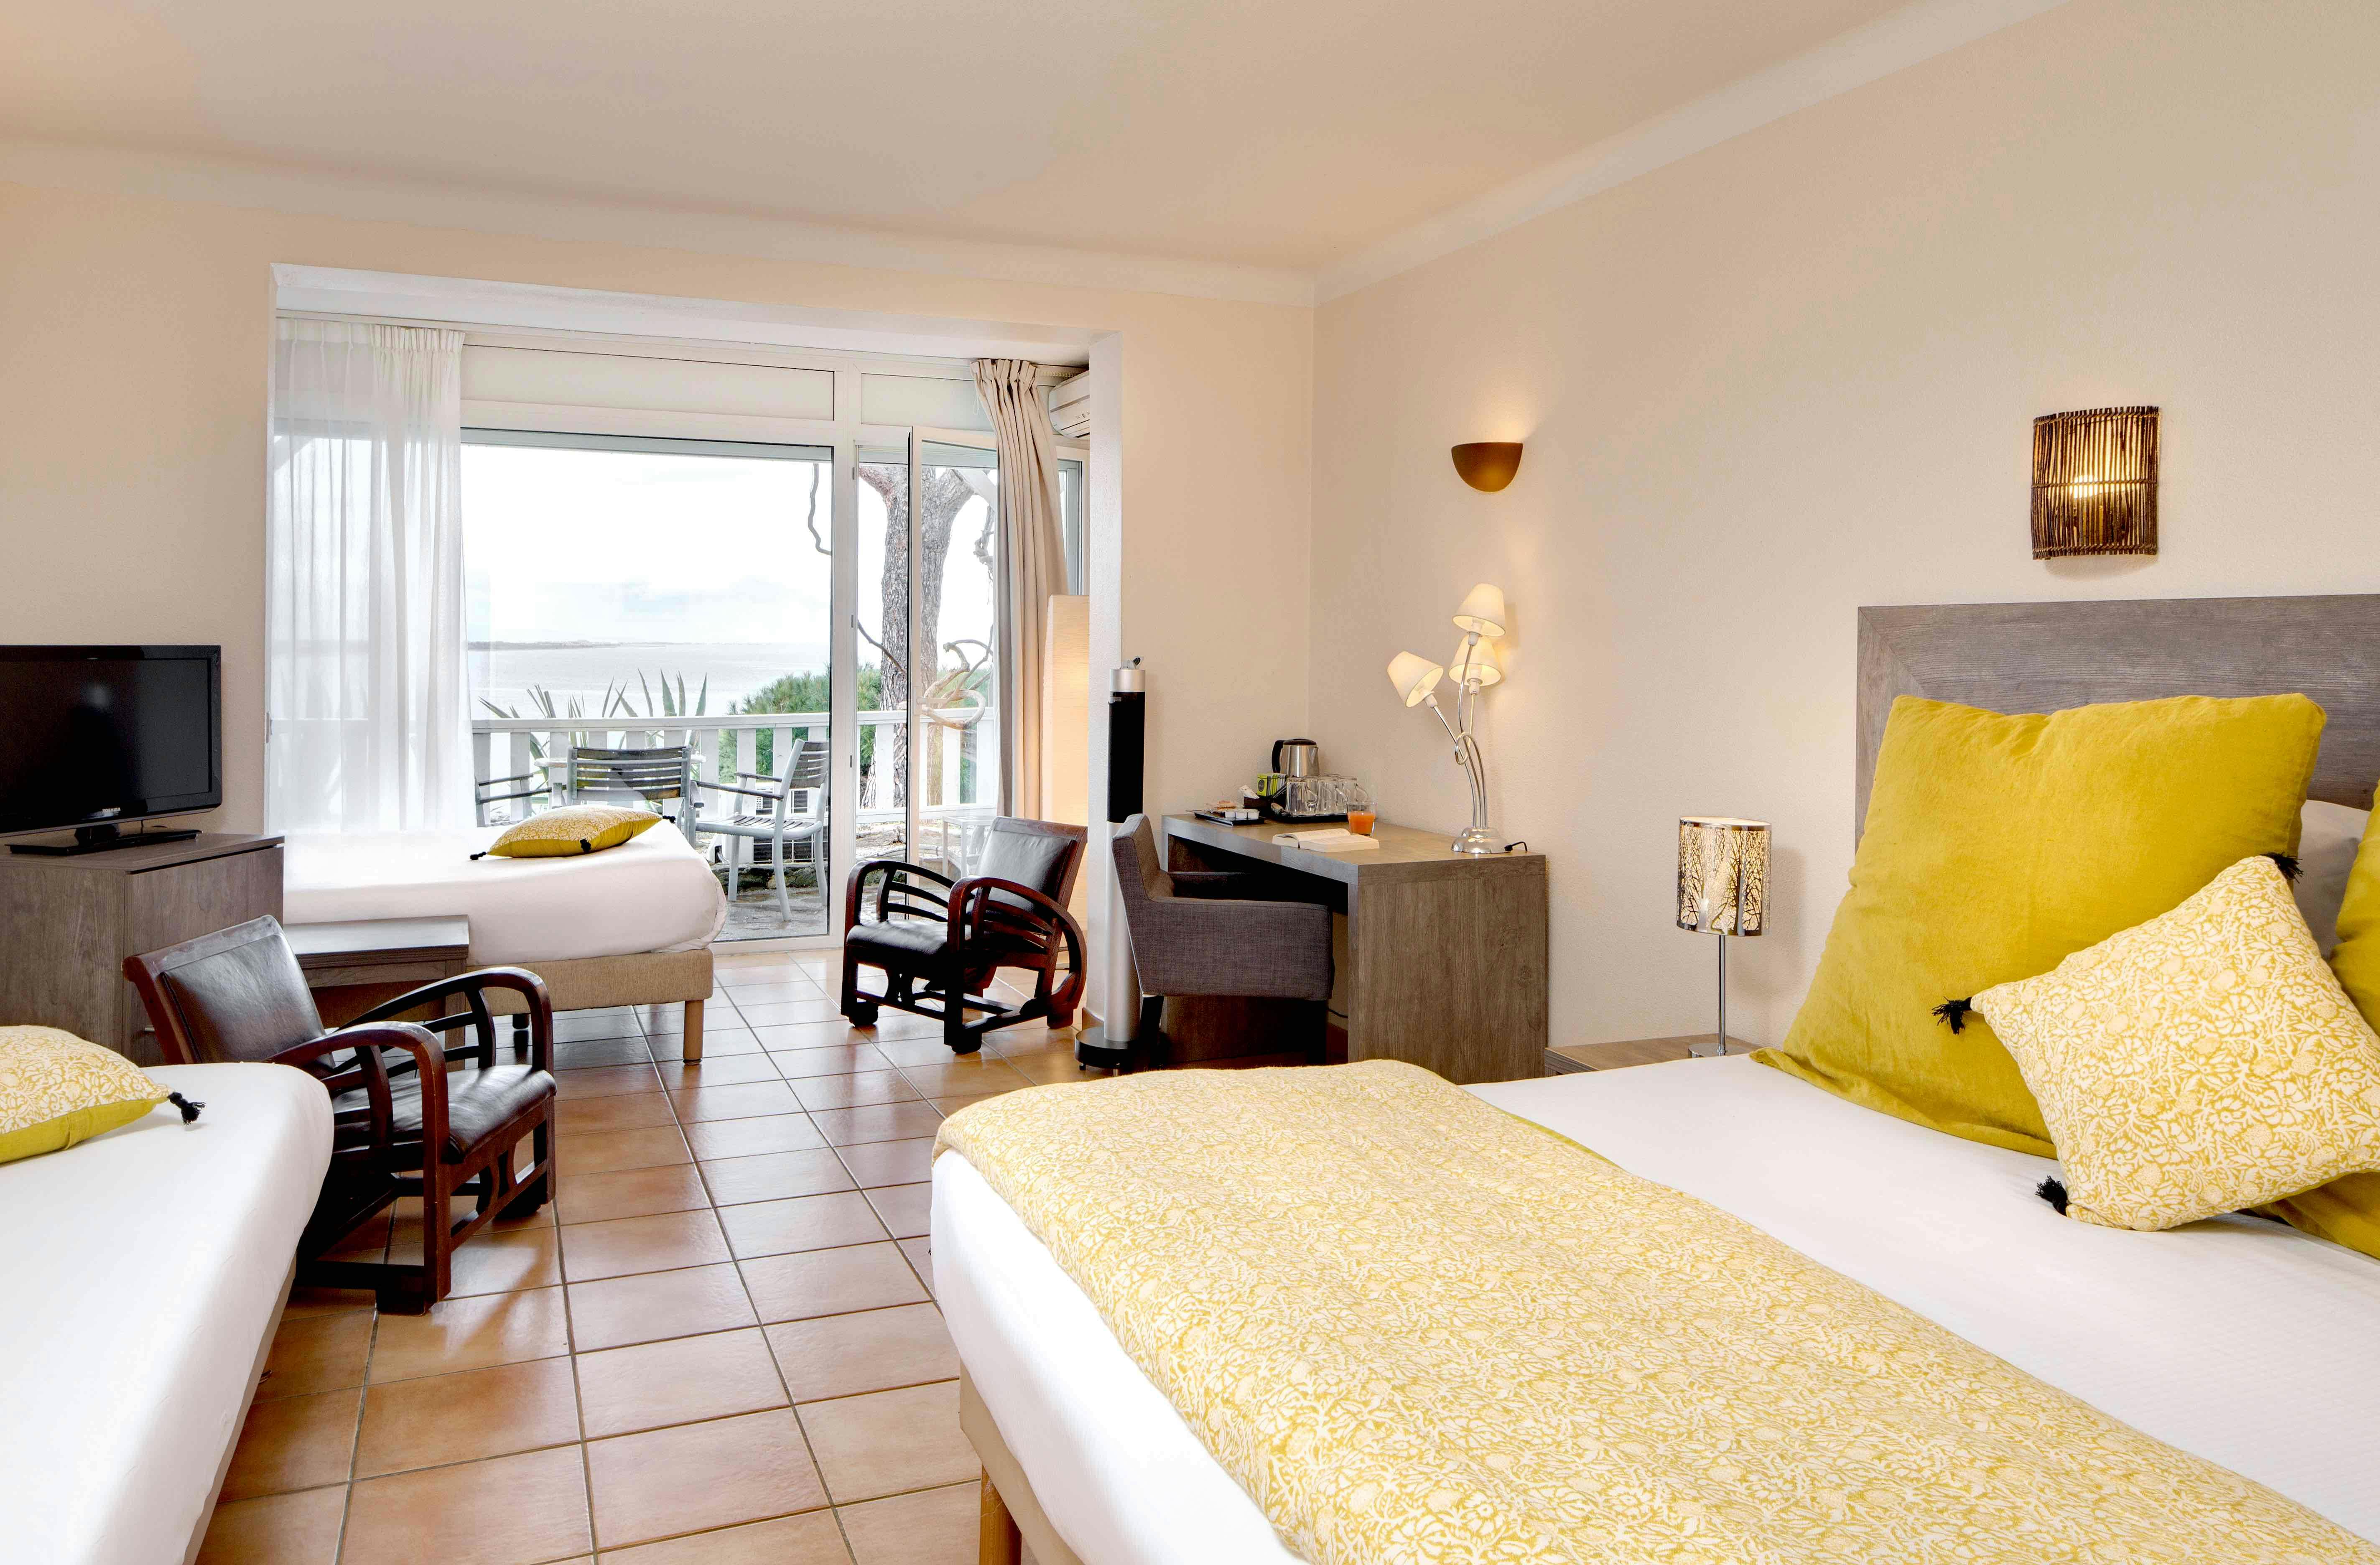 Chambre de la catégorie familiale vue mer de l'hôtel les mouettes situé entre Argelès et Collioure